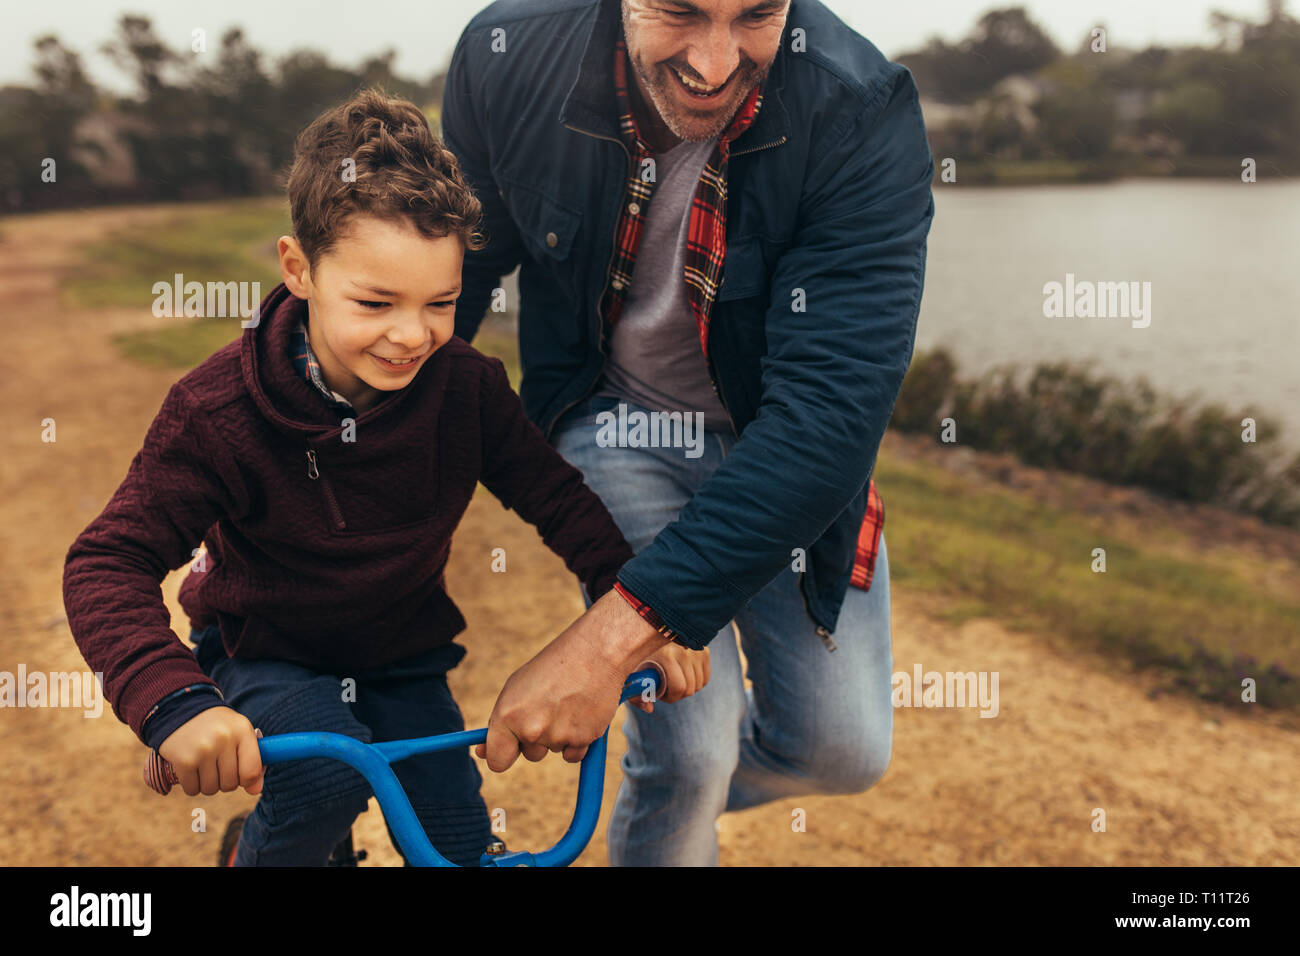 Lächelnd Kind lernen ein Fahrrad in der Nähe von einem See zu fahren. Mann auf dem Fahrrad halten Sie, während das Kind lernt es zu fahren. Stockfoto